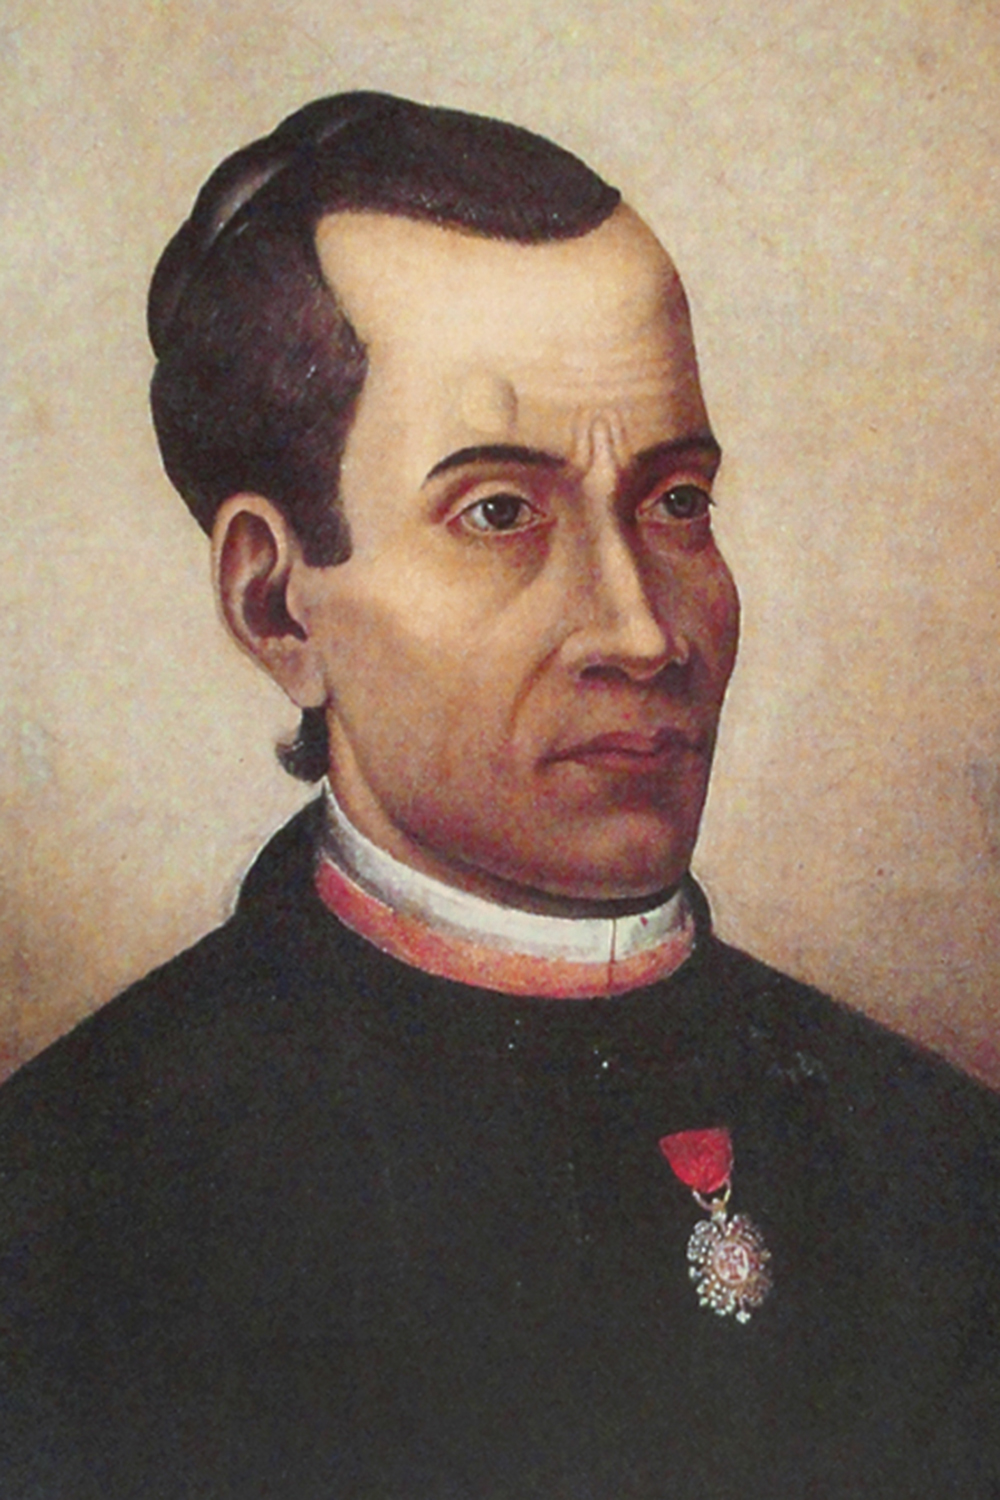 José Mauricio Nunes Garcia